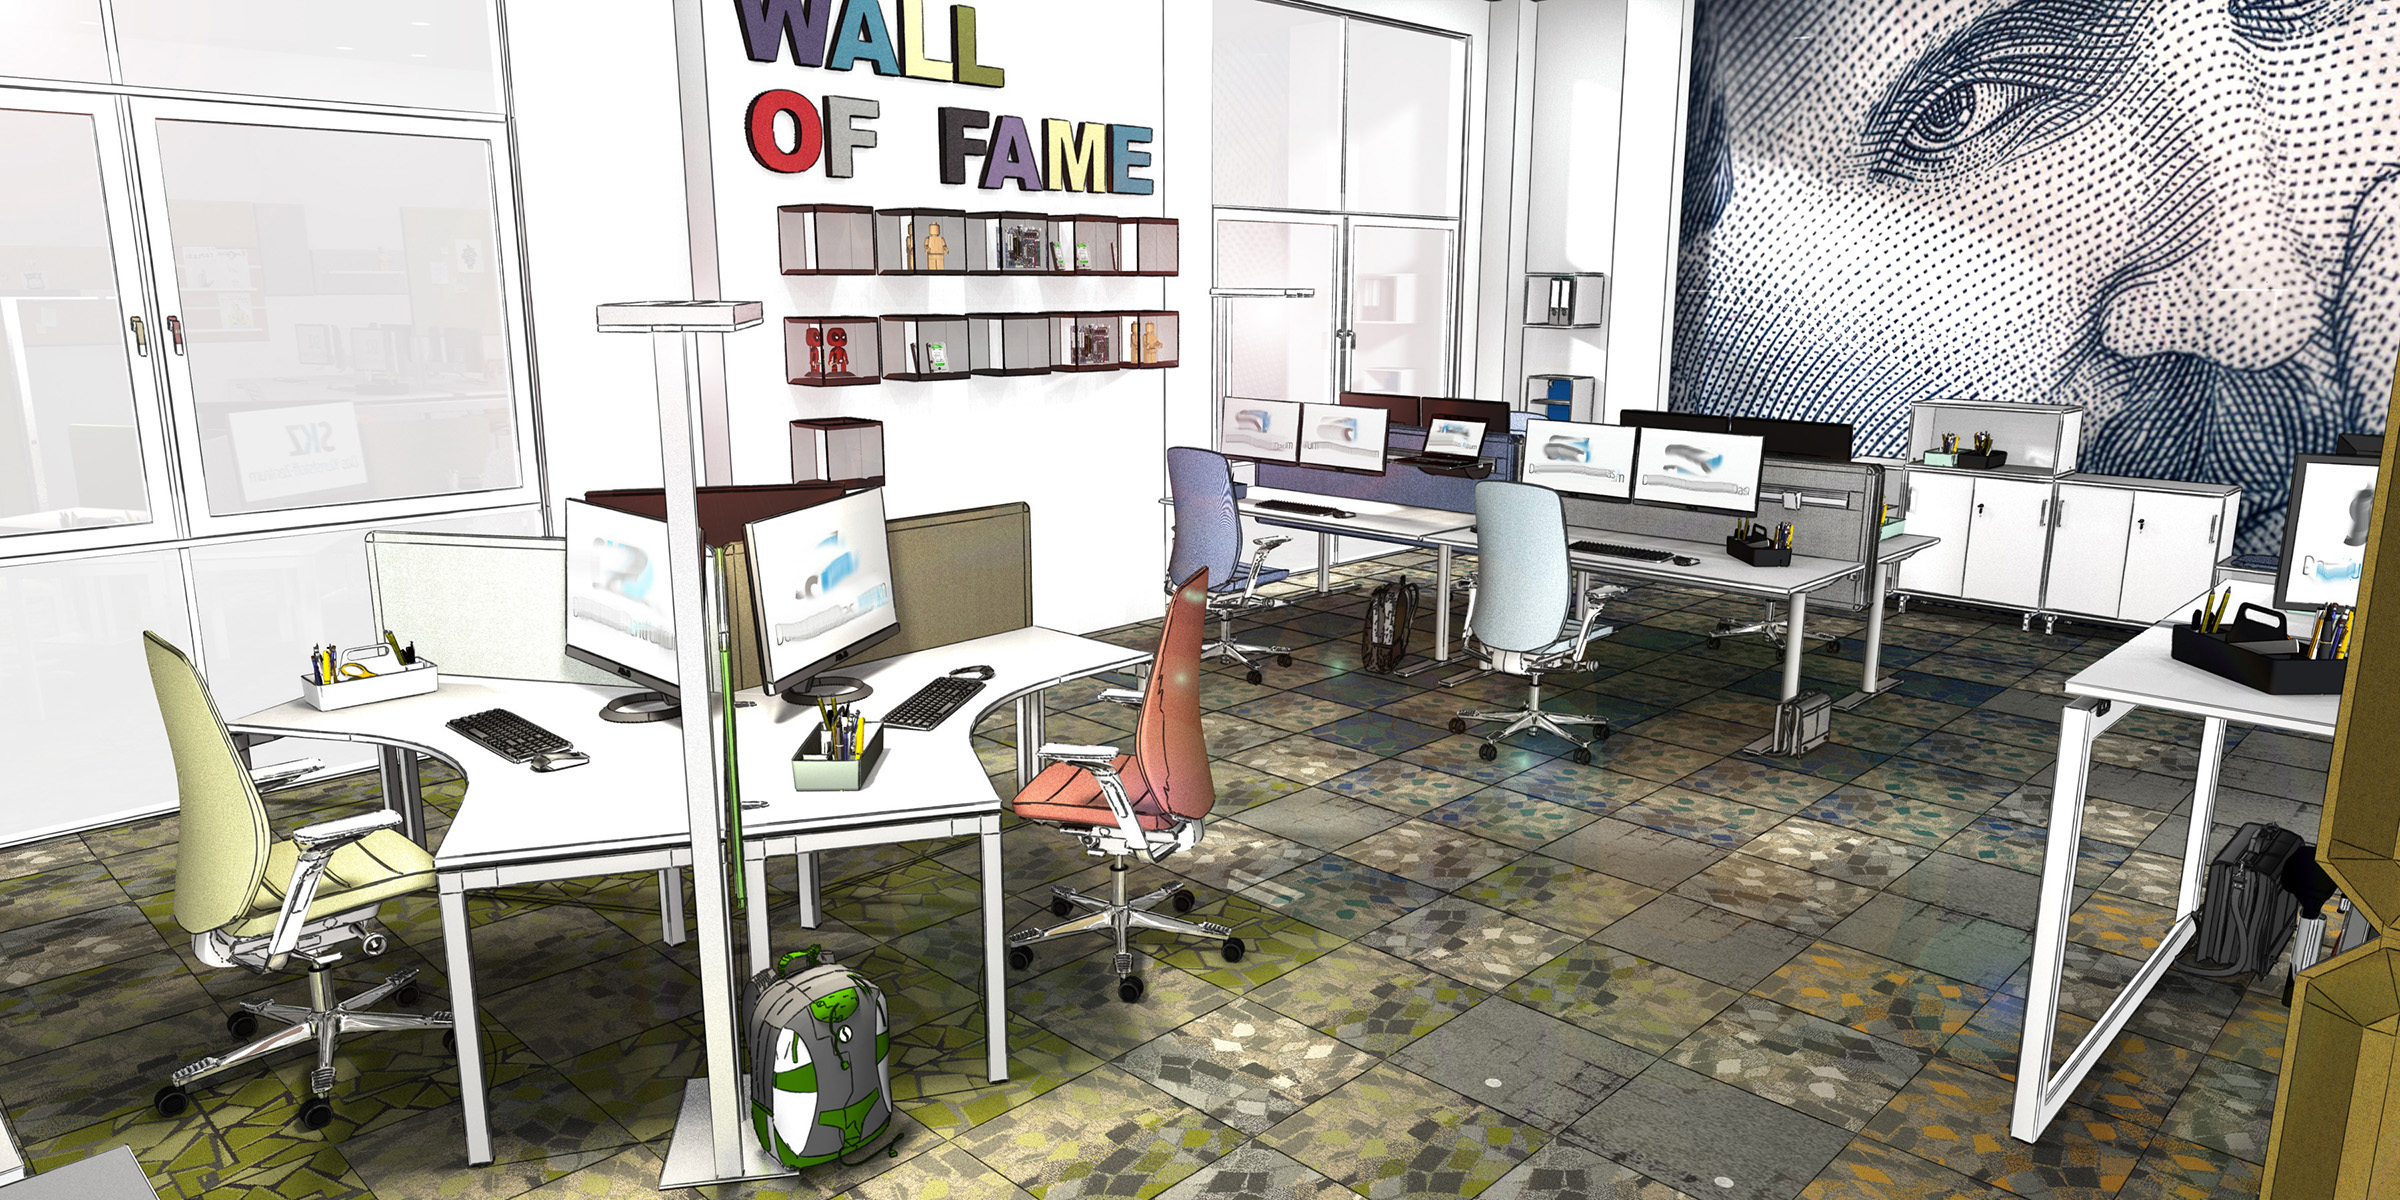 Arbeitsplätze, Schreibtische, Teambench, Teamraum für temporäre Arbeit in einem Büro, neue Arbeitwelten, Inenanrchitektur 3D Rendering